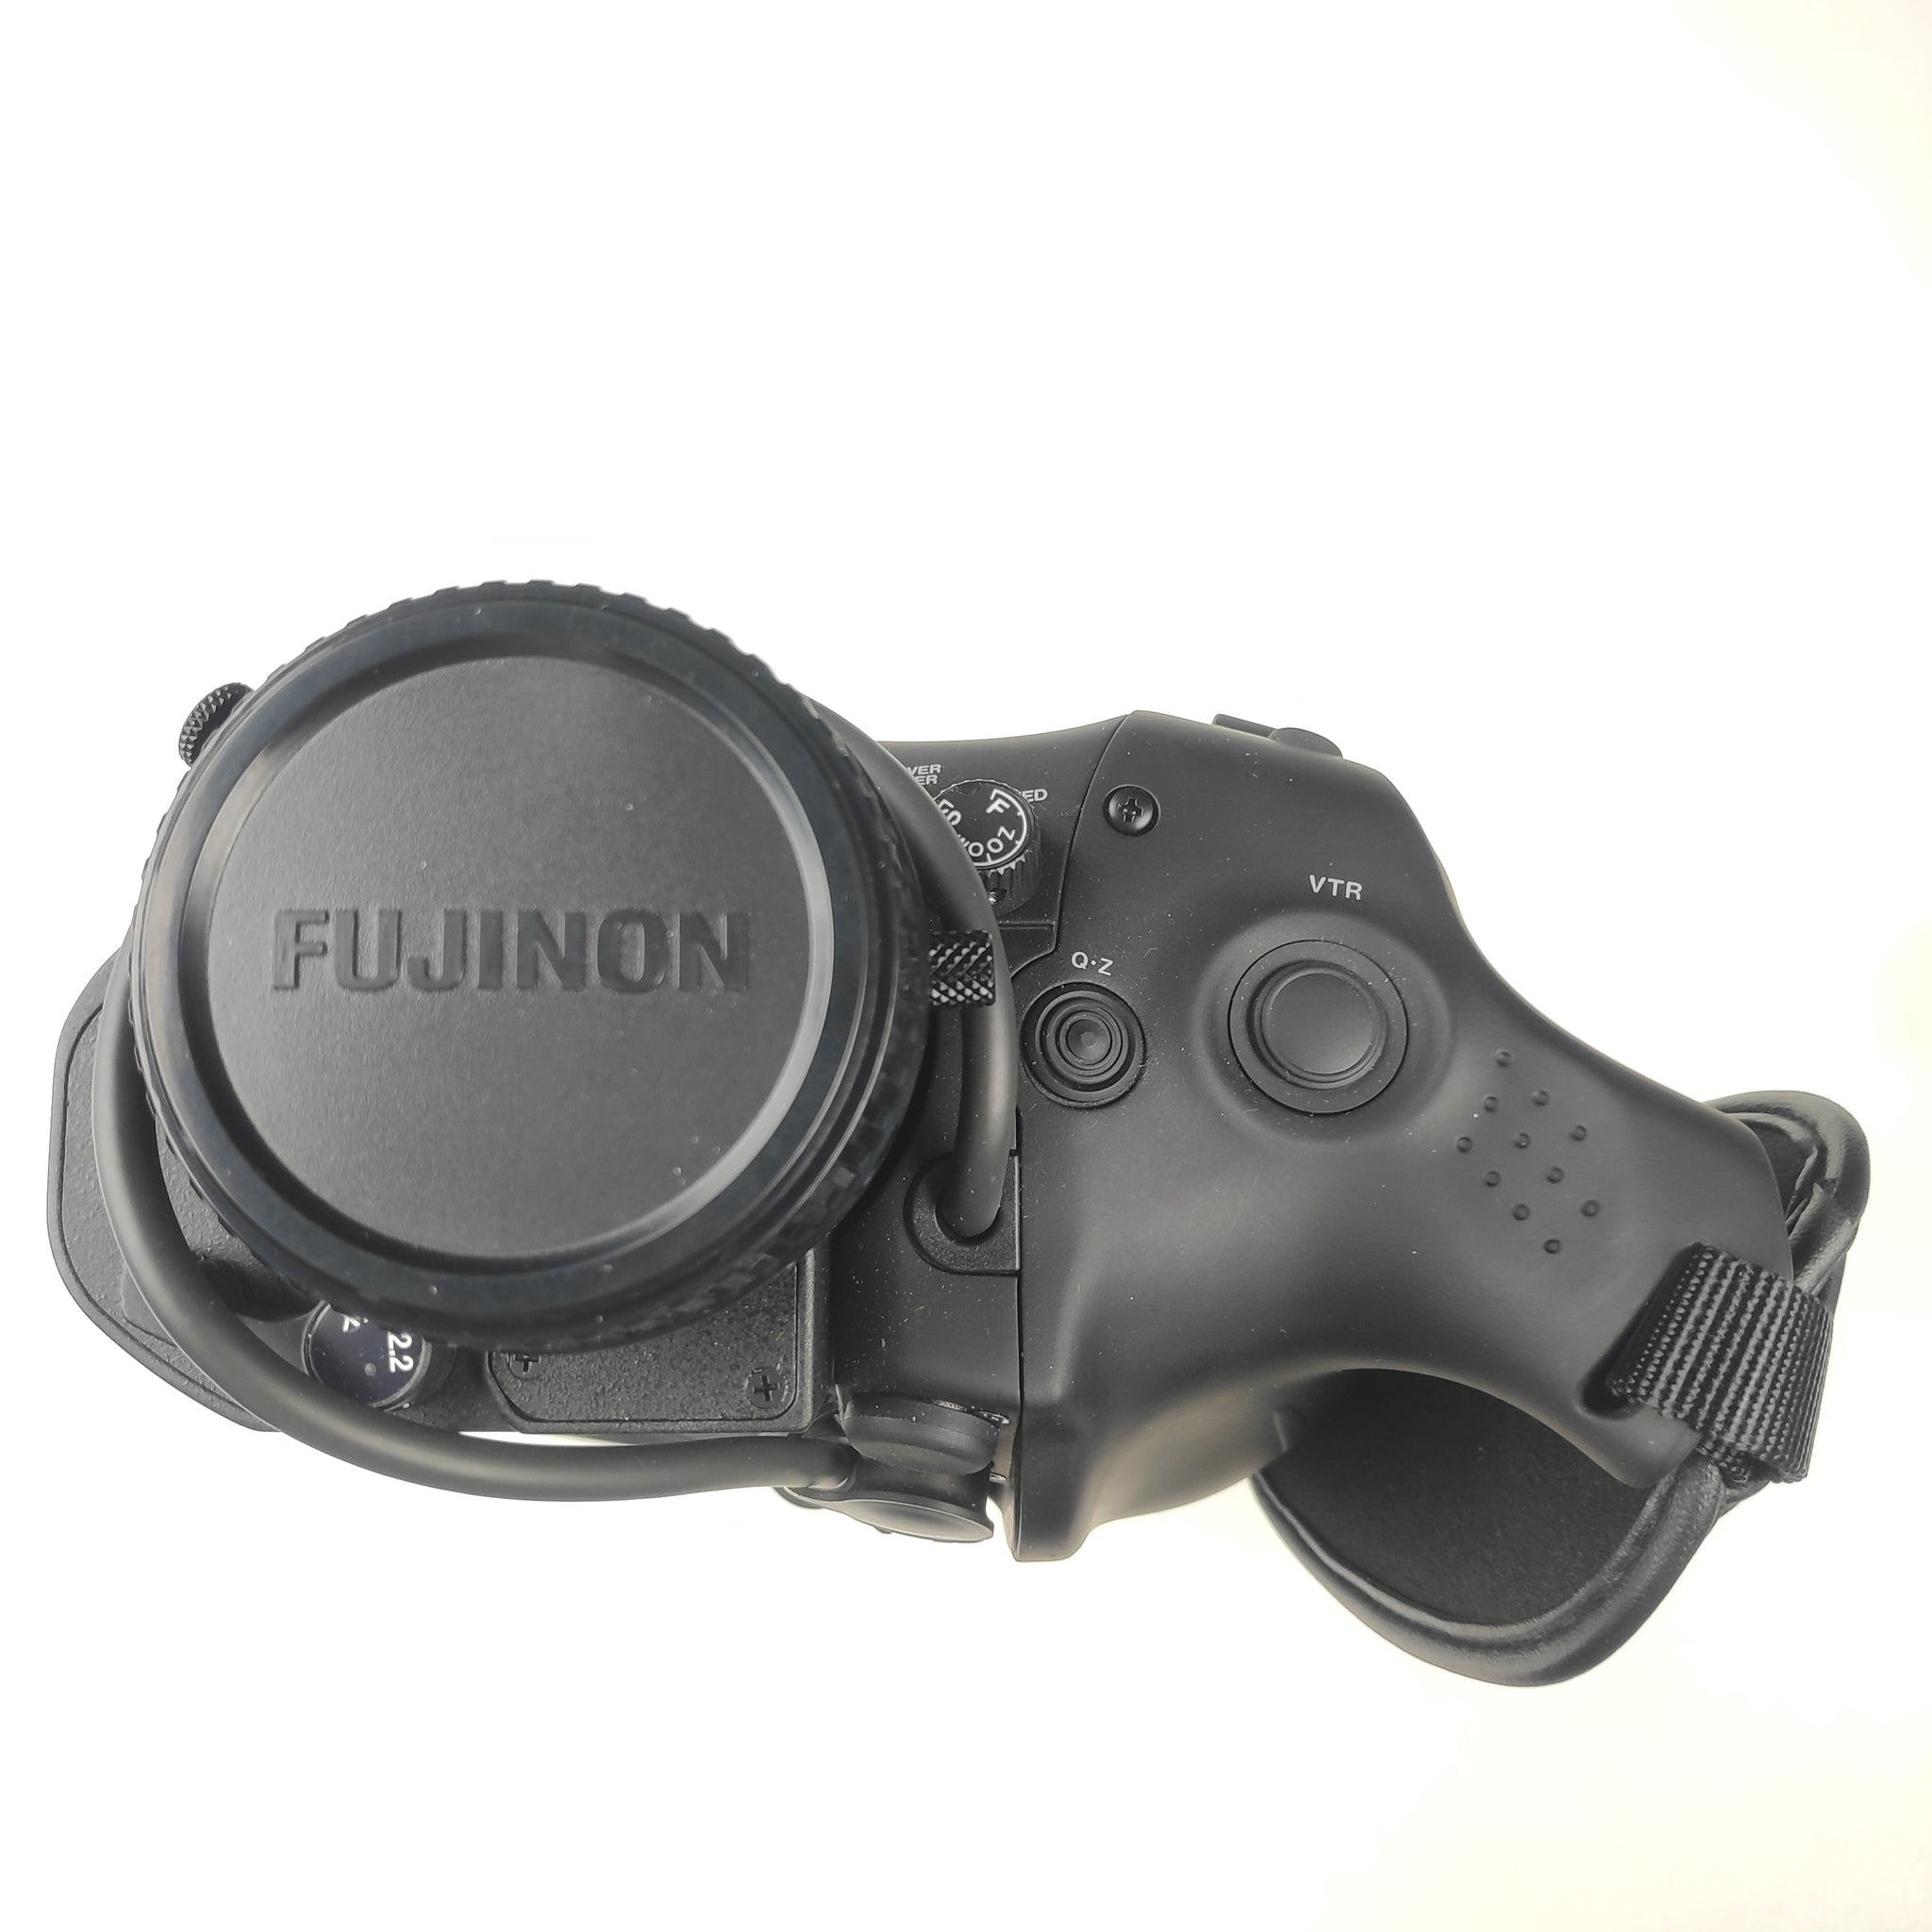 Fujinon HA14x4.5 BERD-S6B with Full-Servo Control Kit SS-15D-02 (23367)